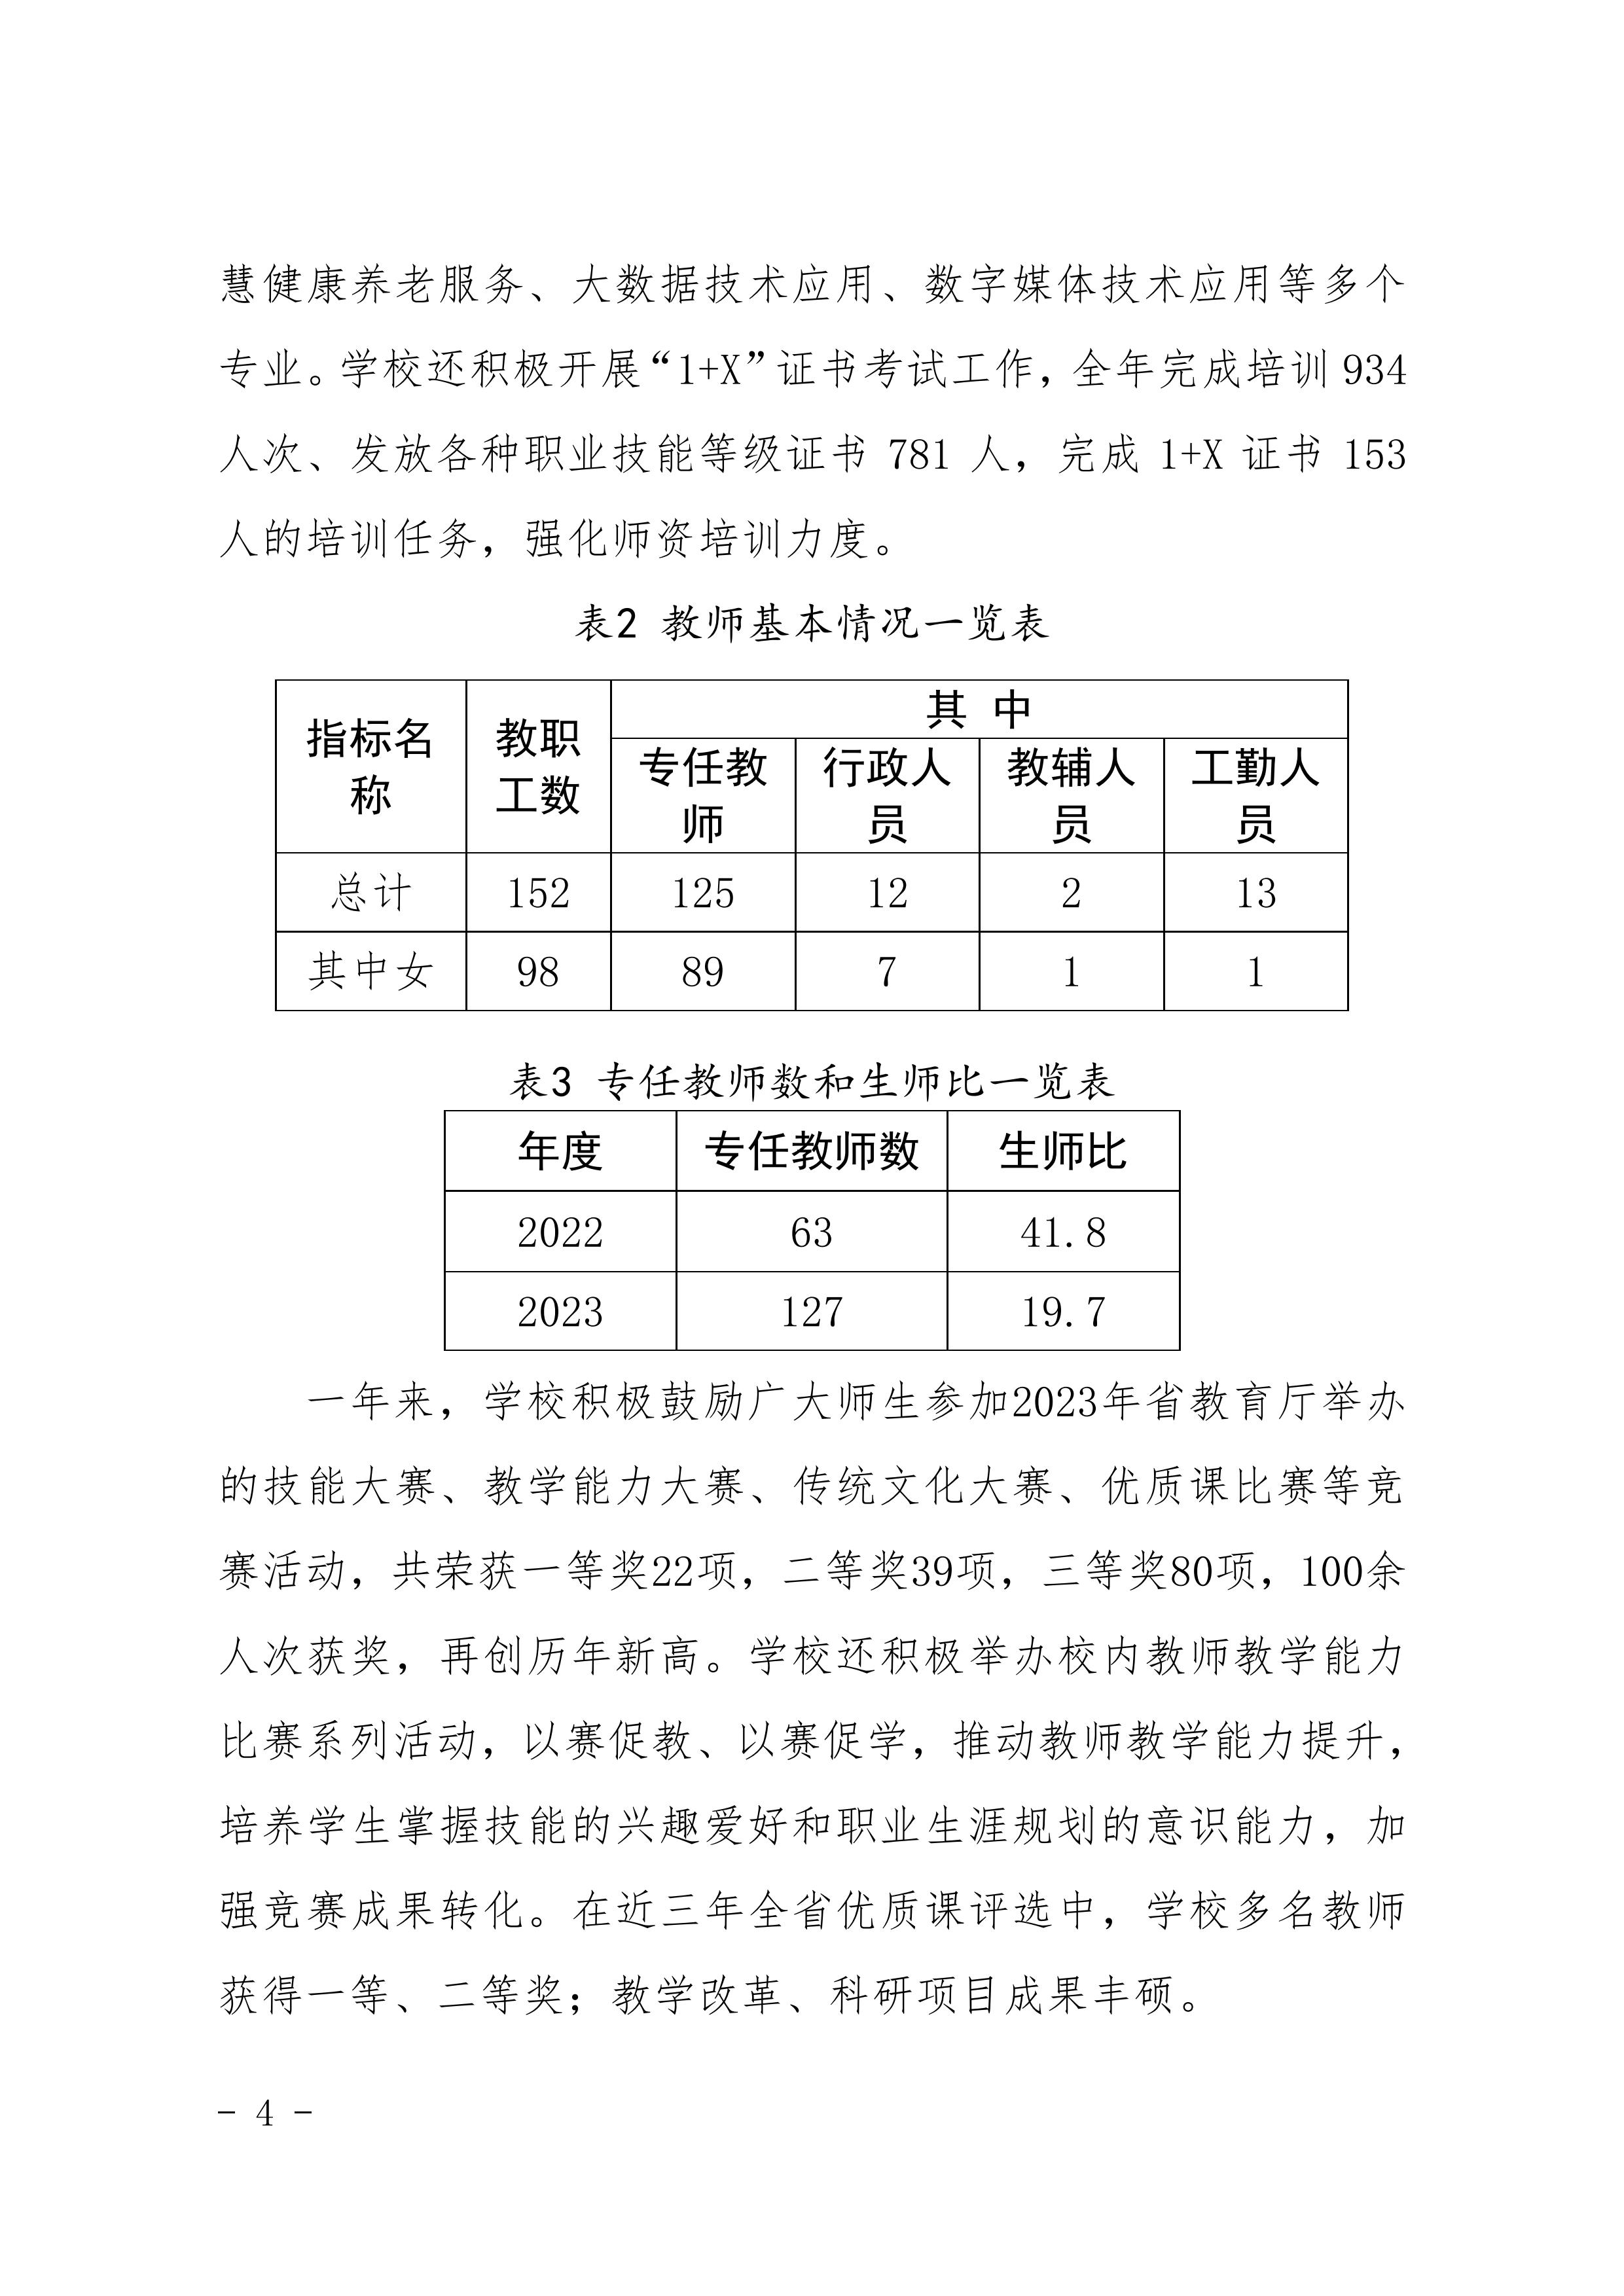 河南省民政学校职业教育质量报告（2023年度）发布版_07.jpg